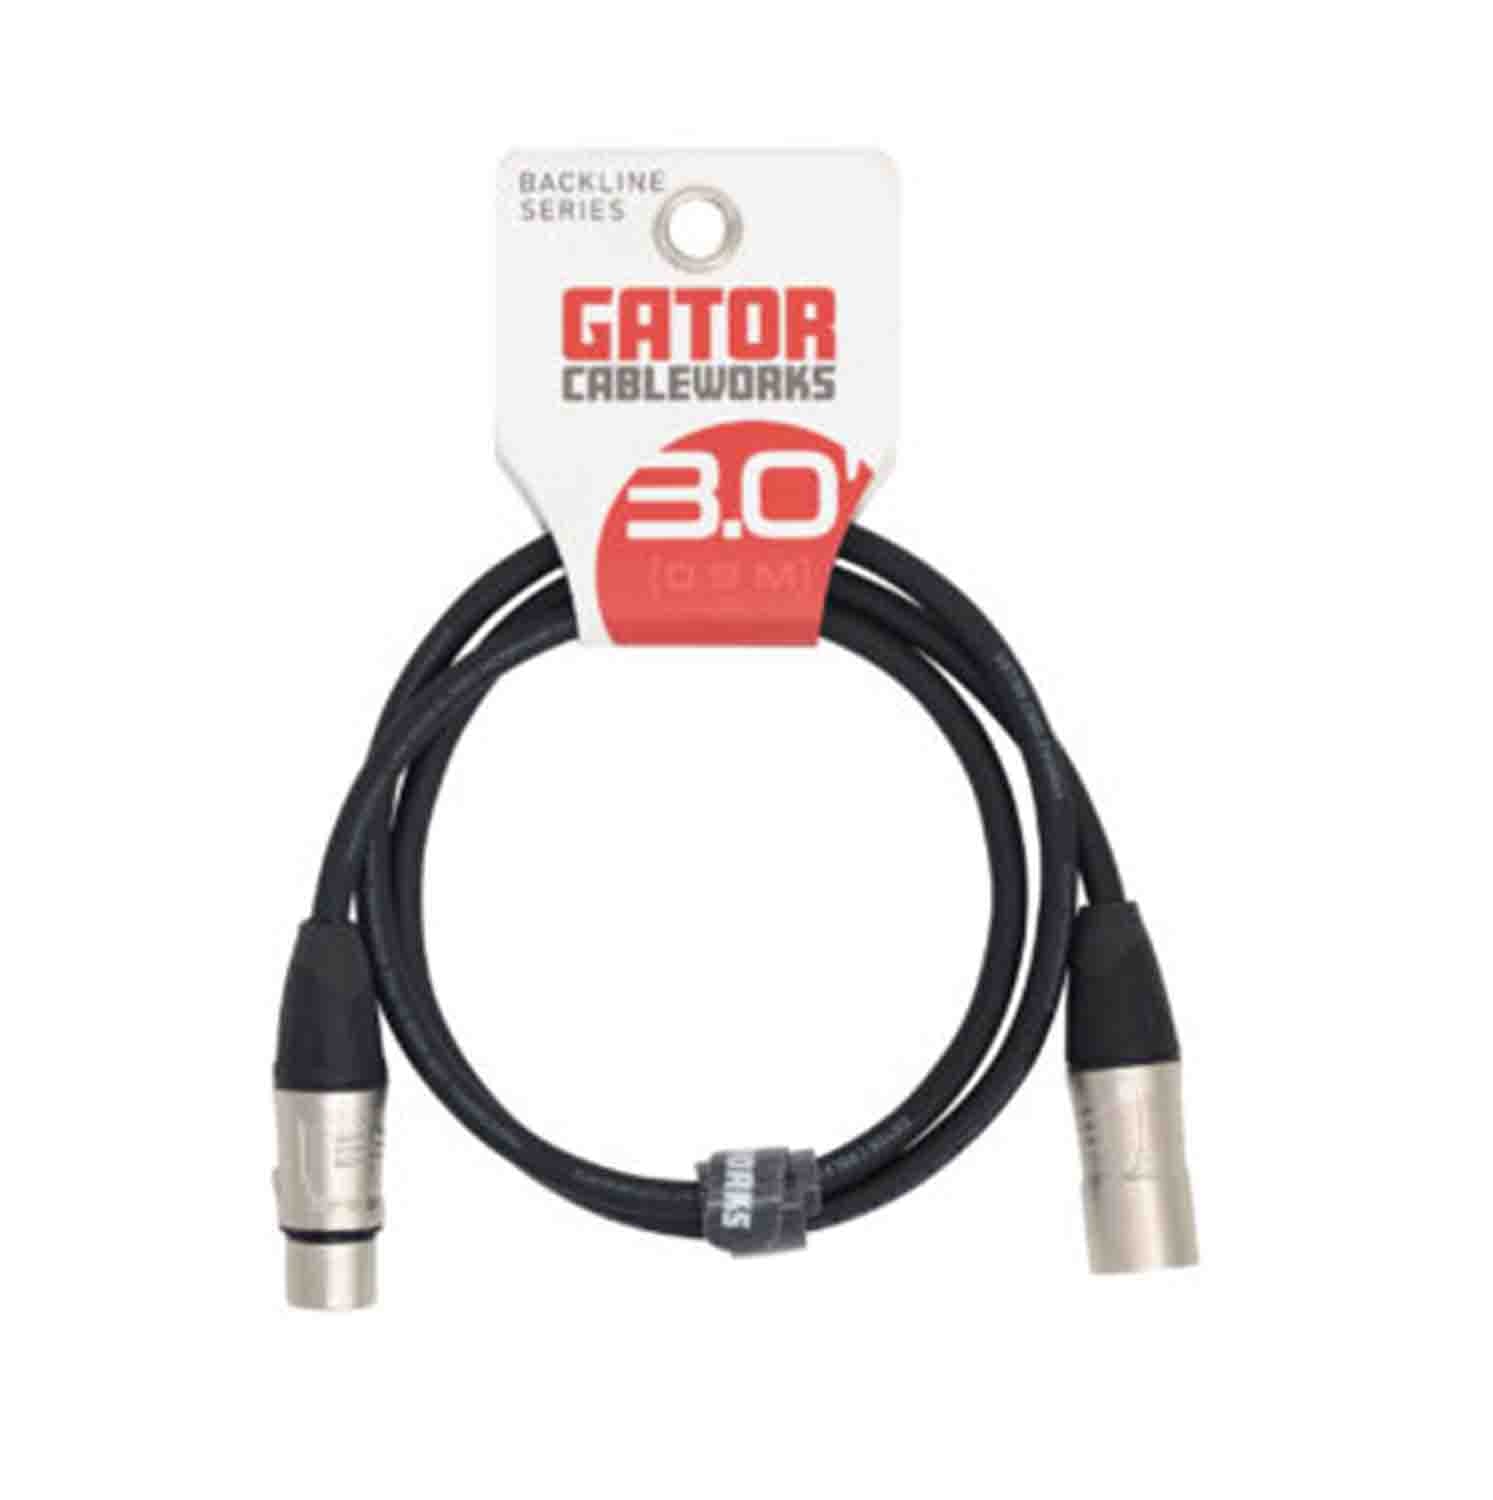 Gator Cableworks GCWB-XLR Backline Series XLR Microphone Cable - Hollywood DJ